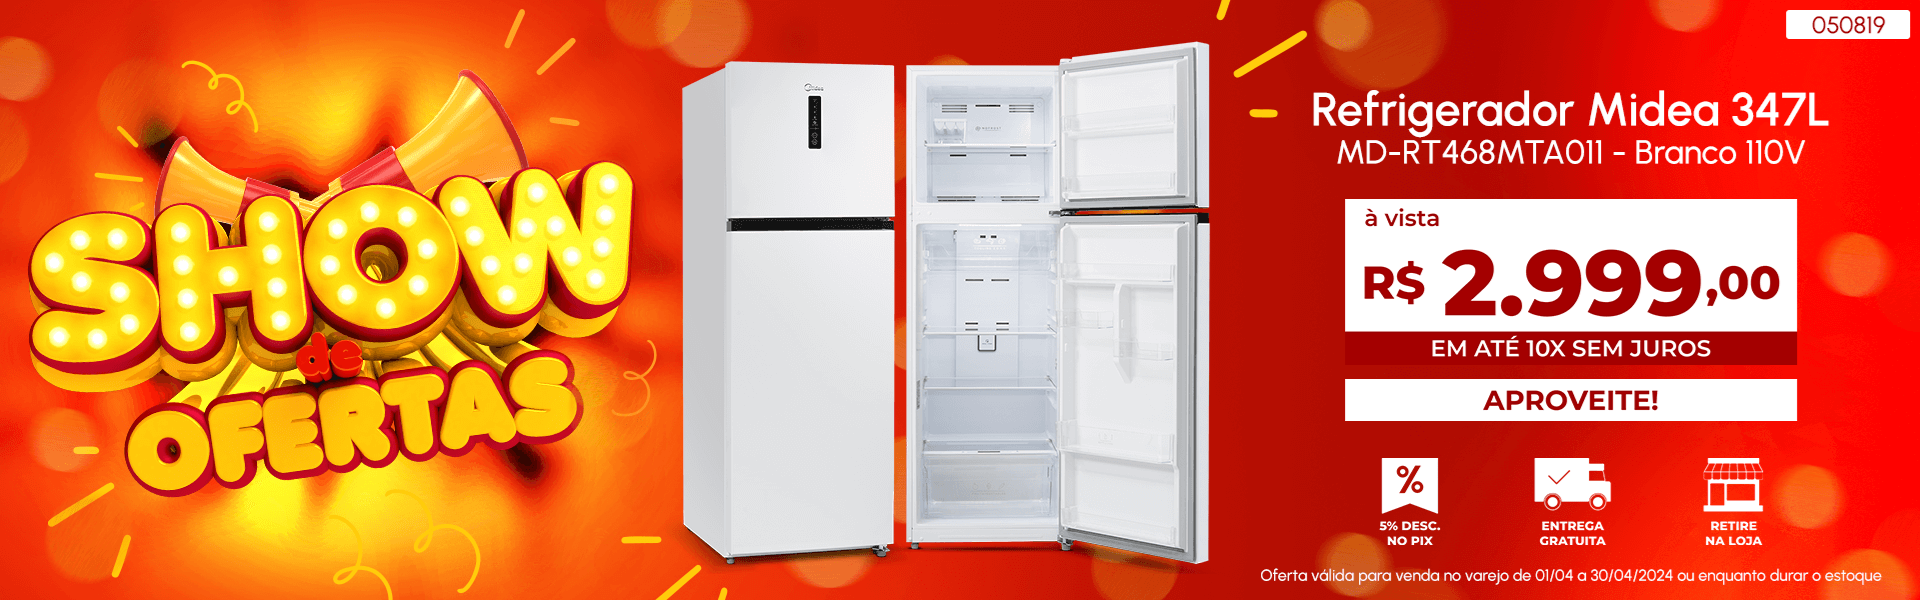 Refrigerador Midea 347L Branco